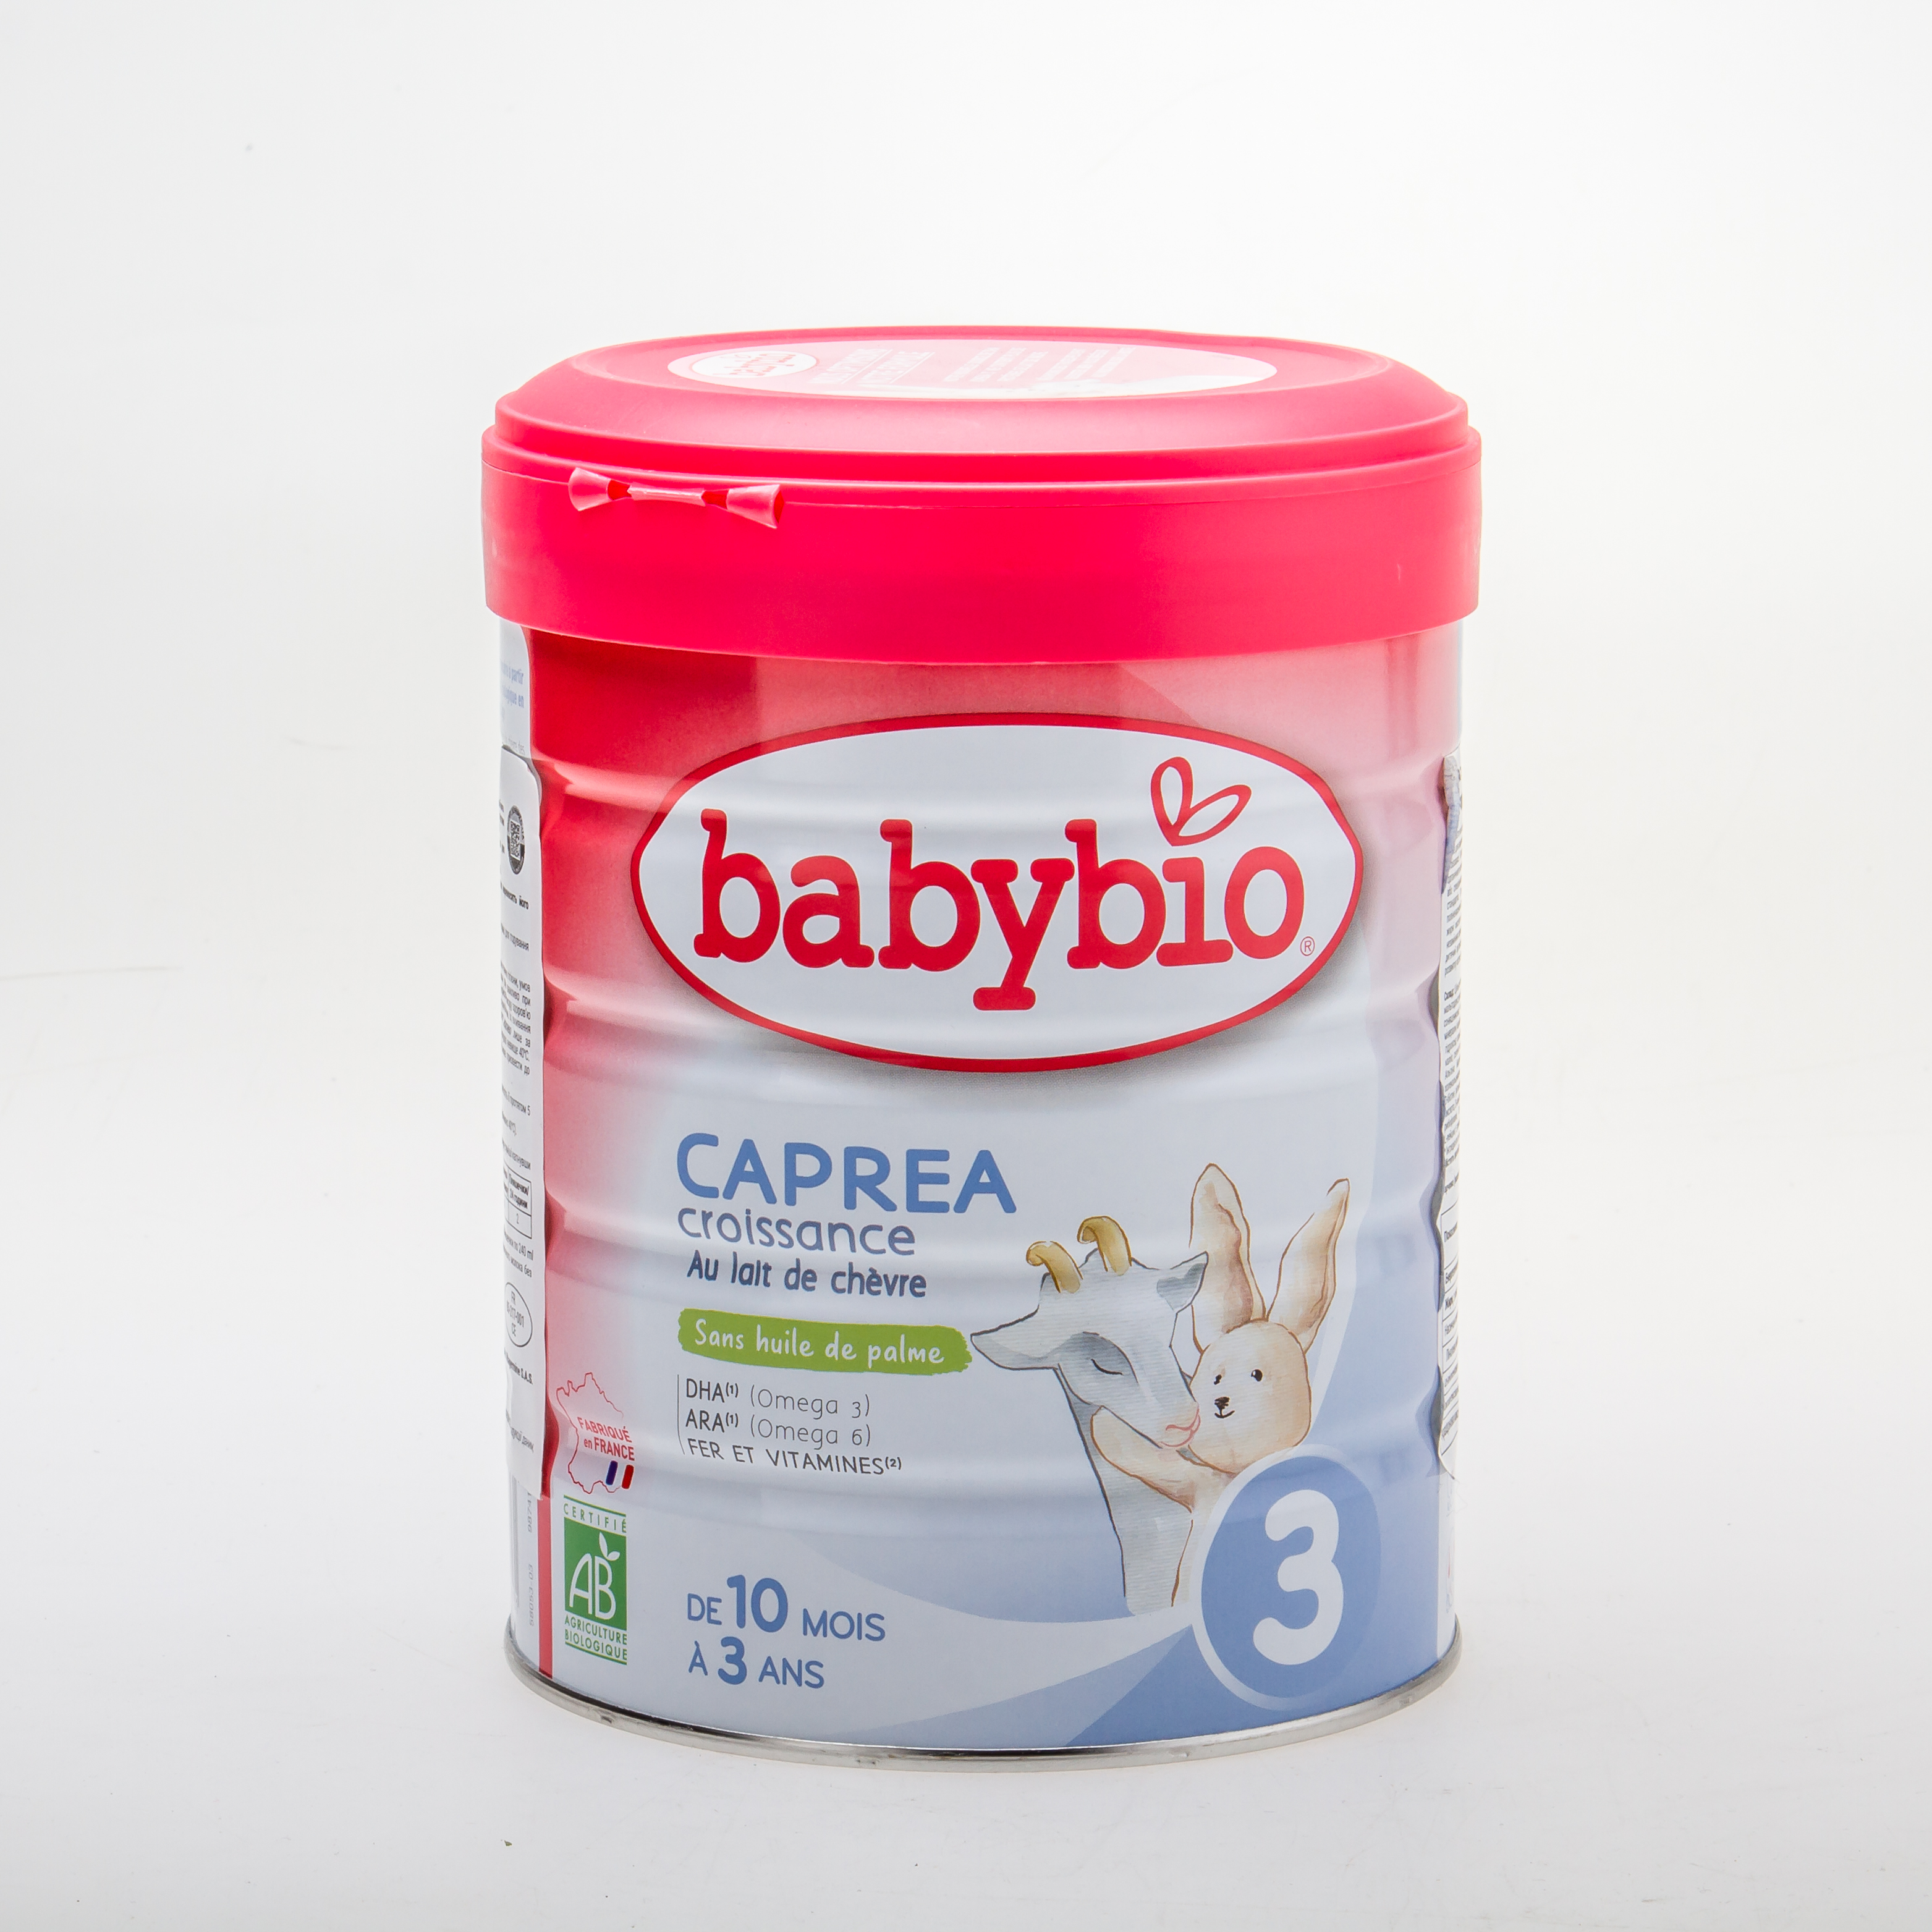 BabyBio Caprea3 Суміш дитяча з козиного молока, органічна для годування  діток від 10 місяців до 3 років 800 гр - купить в интернет-магазине Юнимед